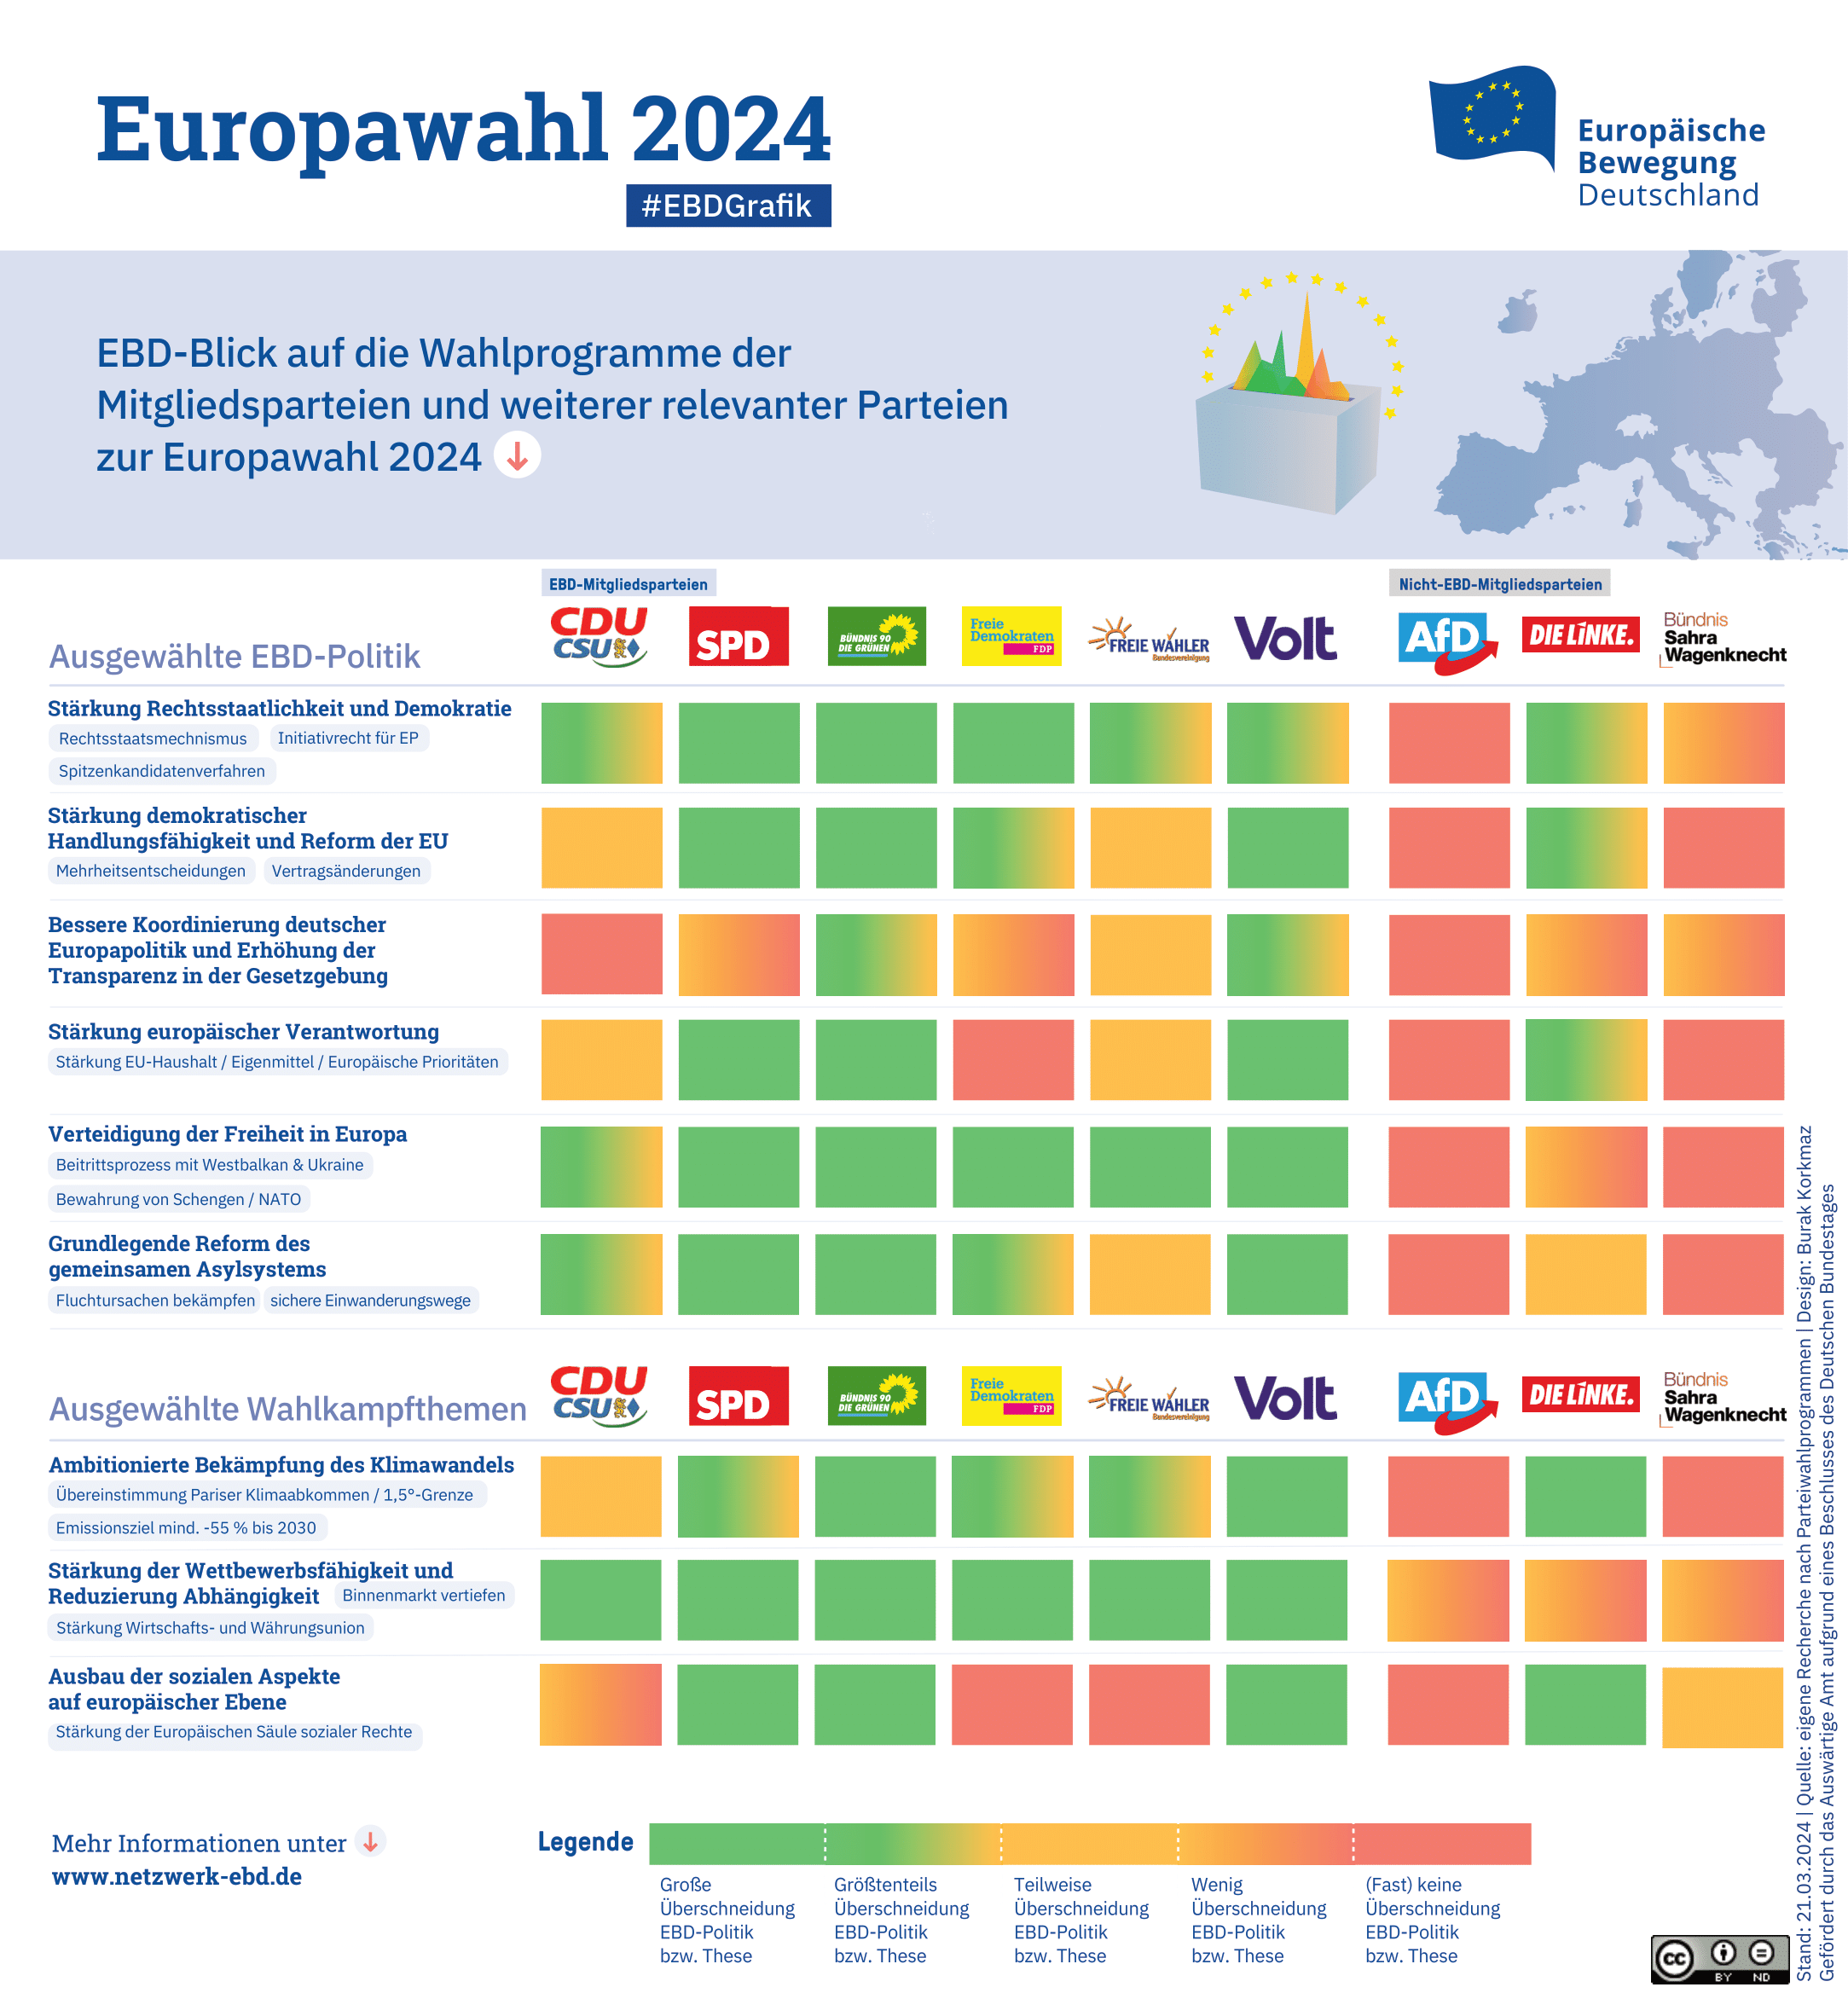 EBD-Blick auf die Wahlprogramme der Mitgliedsparteien und weiterer relevanter Parteien zur Europawahl 2024